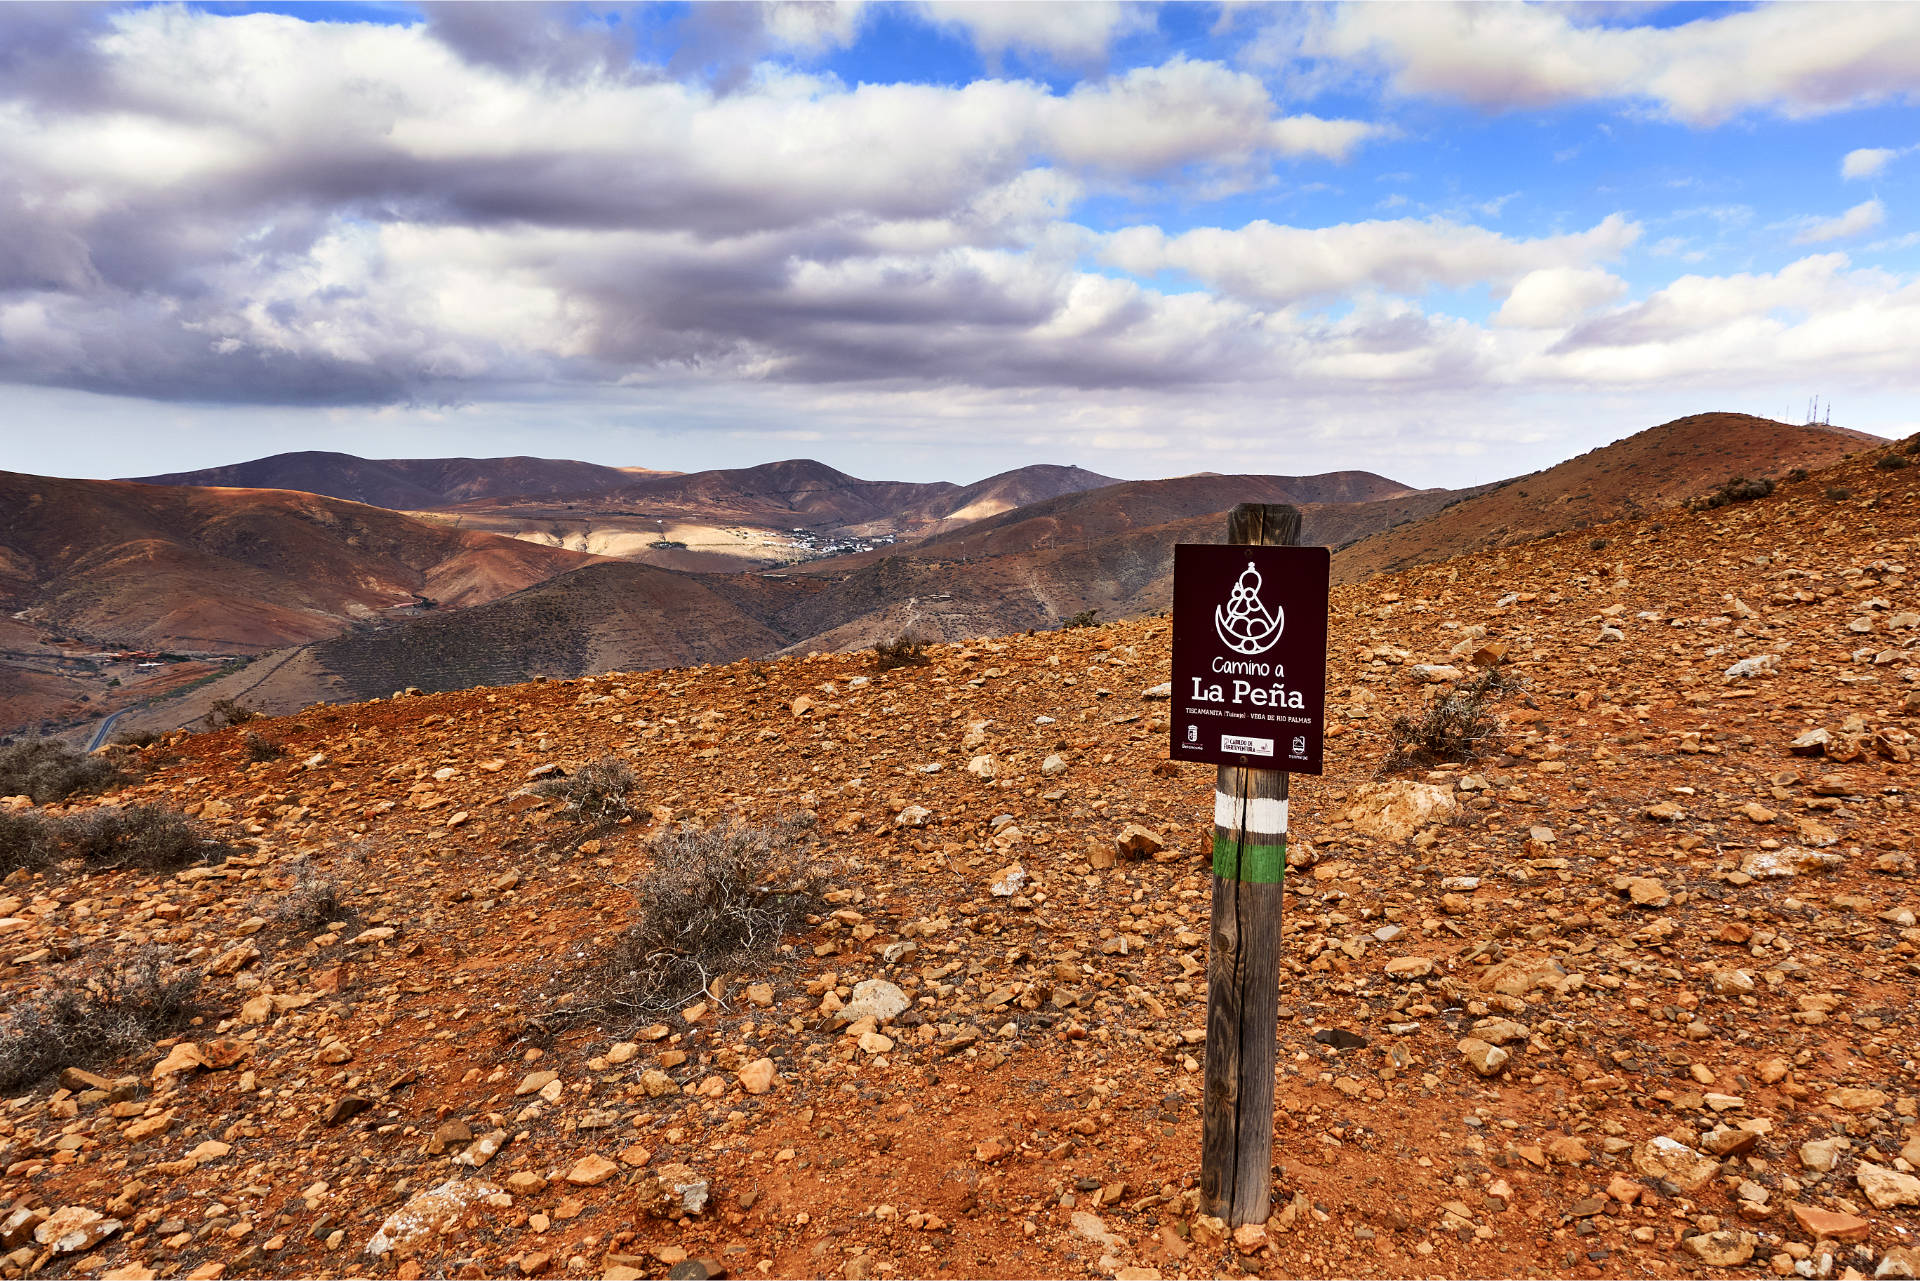 Über den Morro Rincón del Atajo (569 m) führt auch eine Variante des Camino a La Peña.